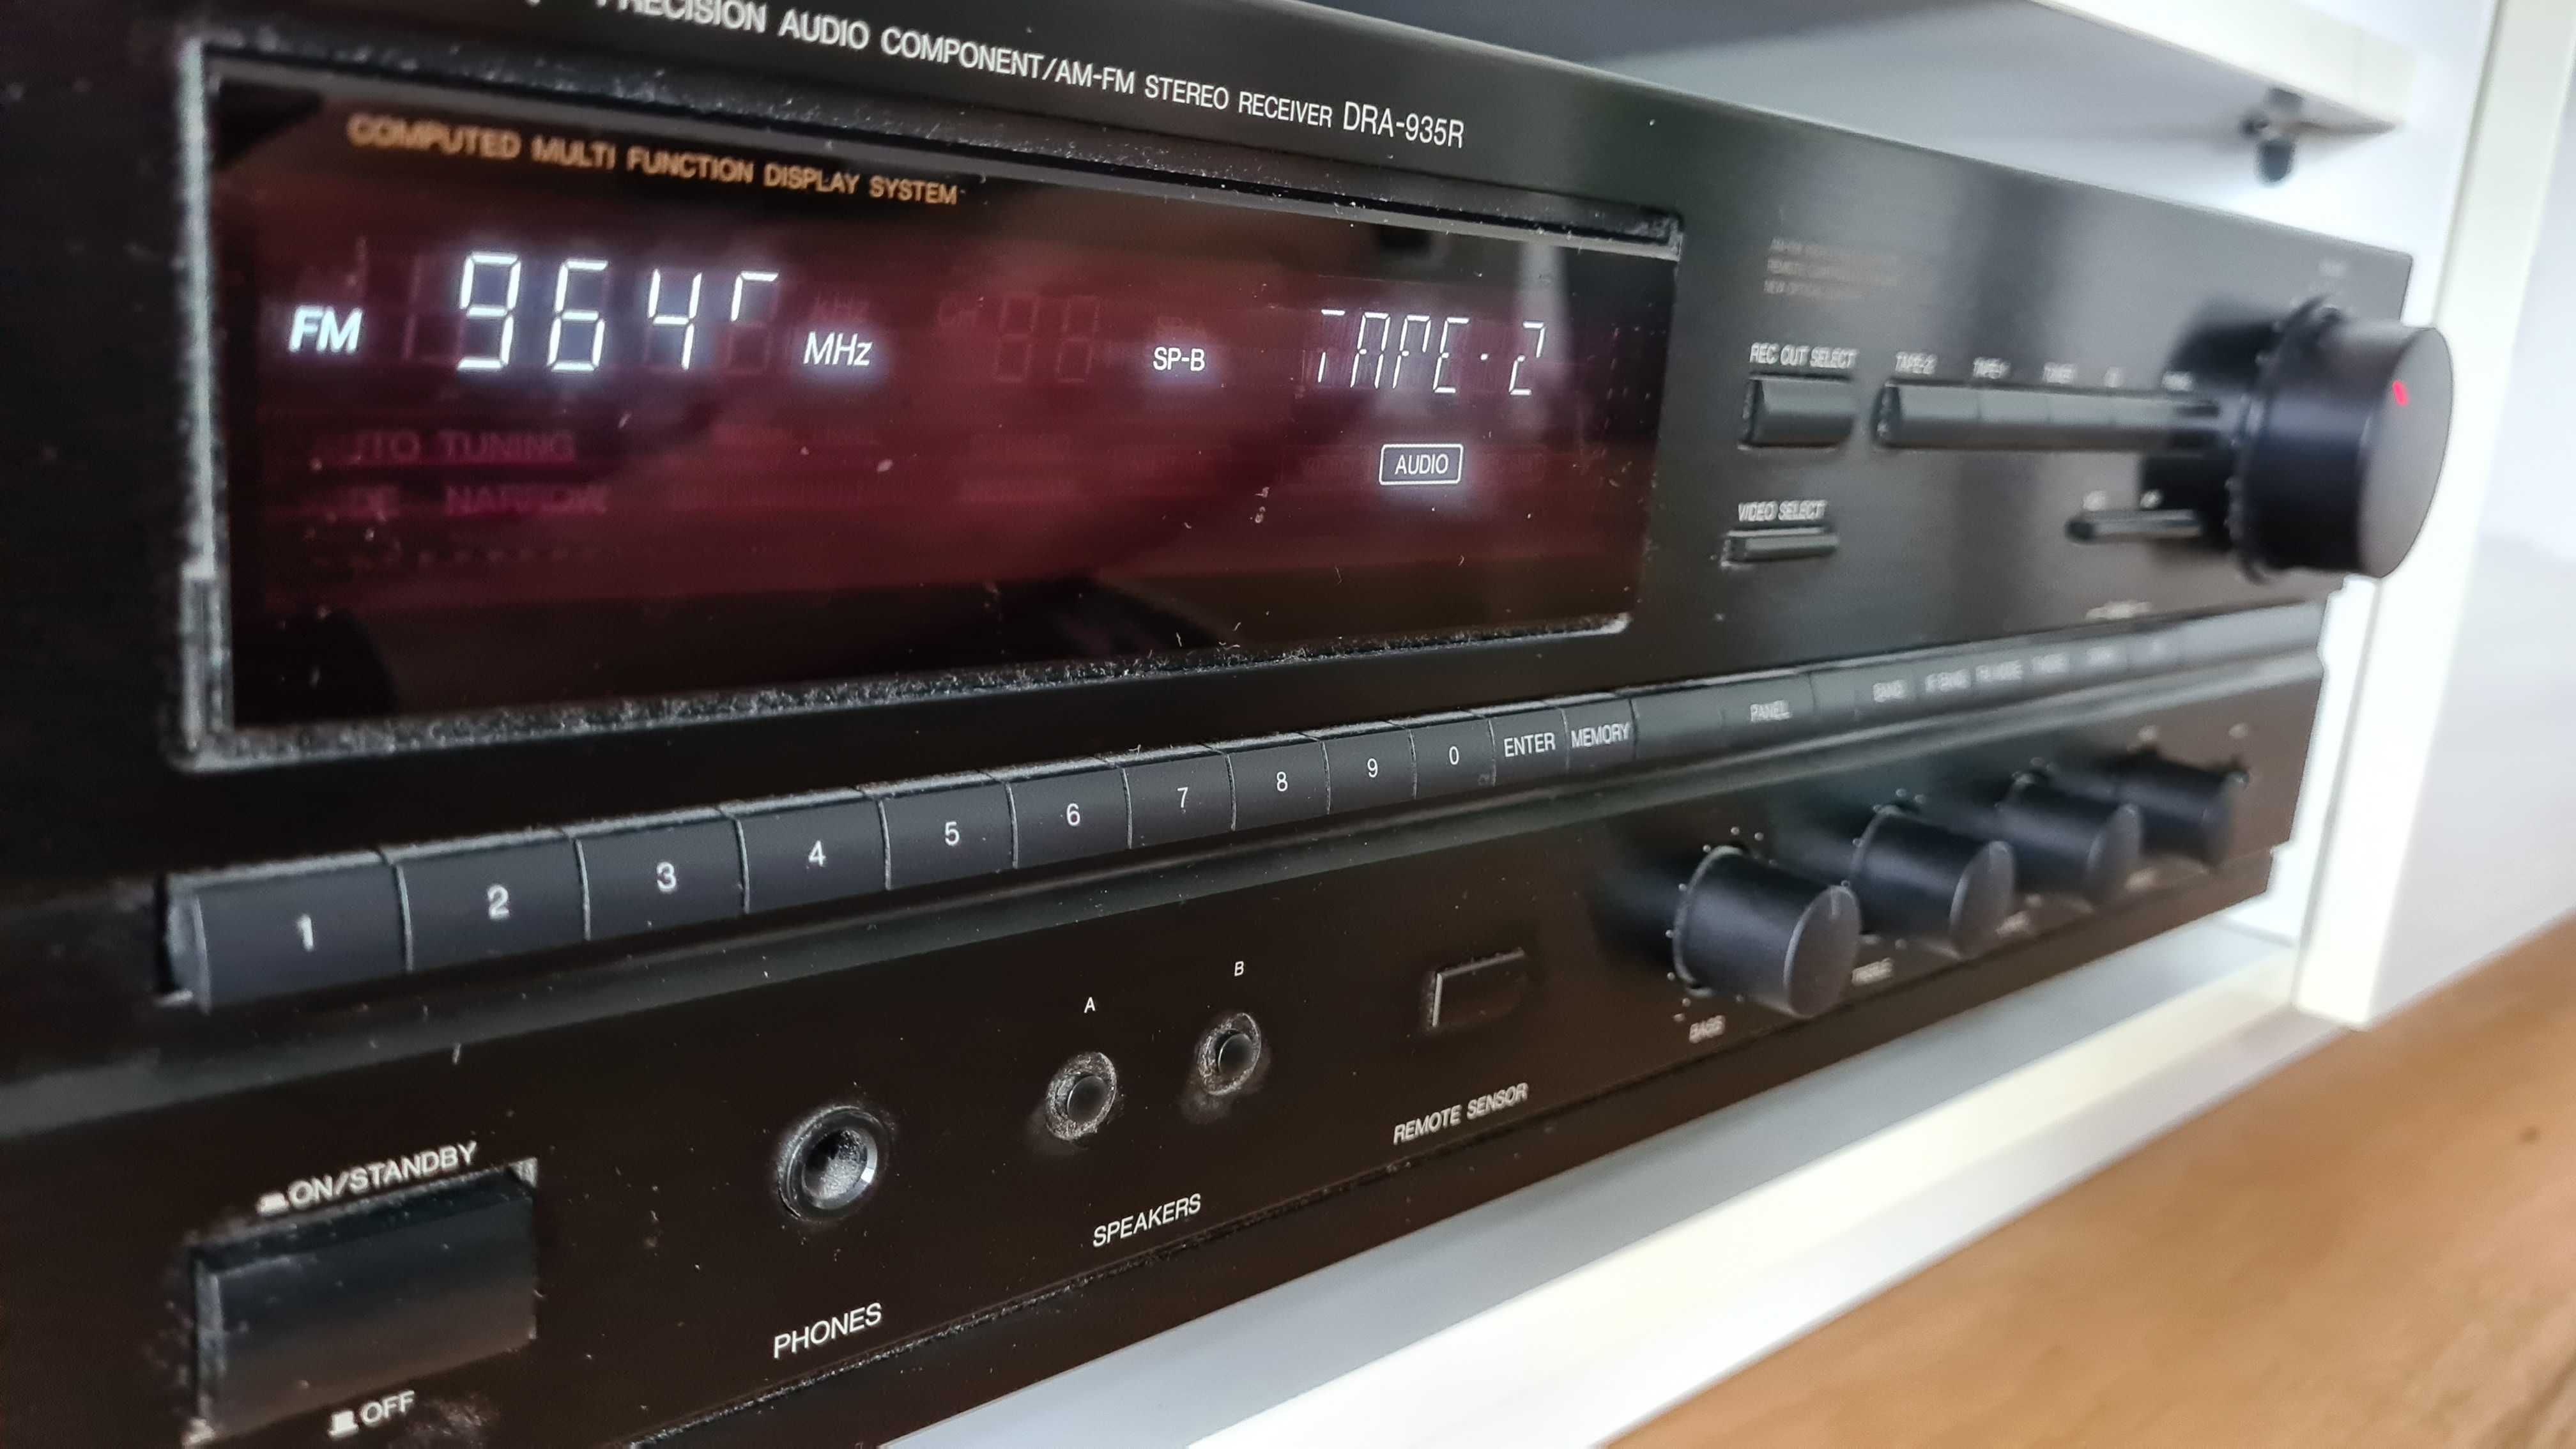 Amplituner stereo Denon DRA-935R